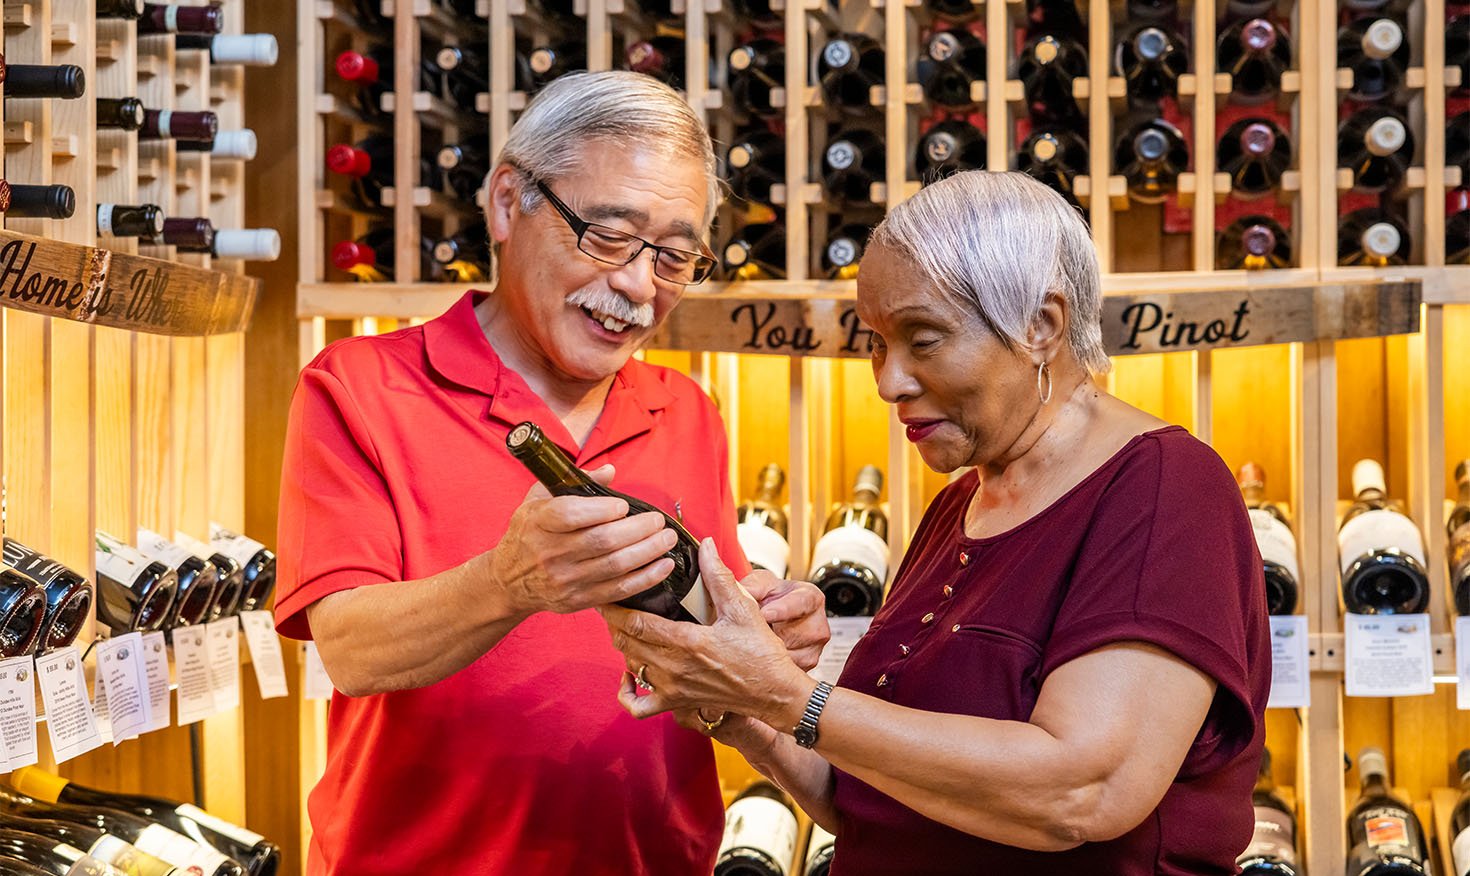 Seniors choosing a bottle of wine in a wine cellar